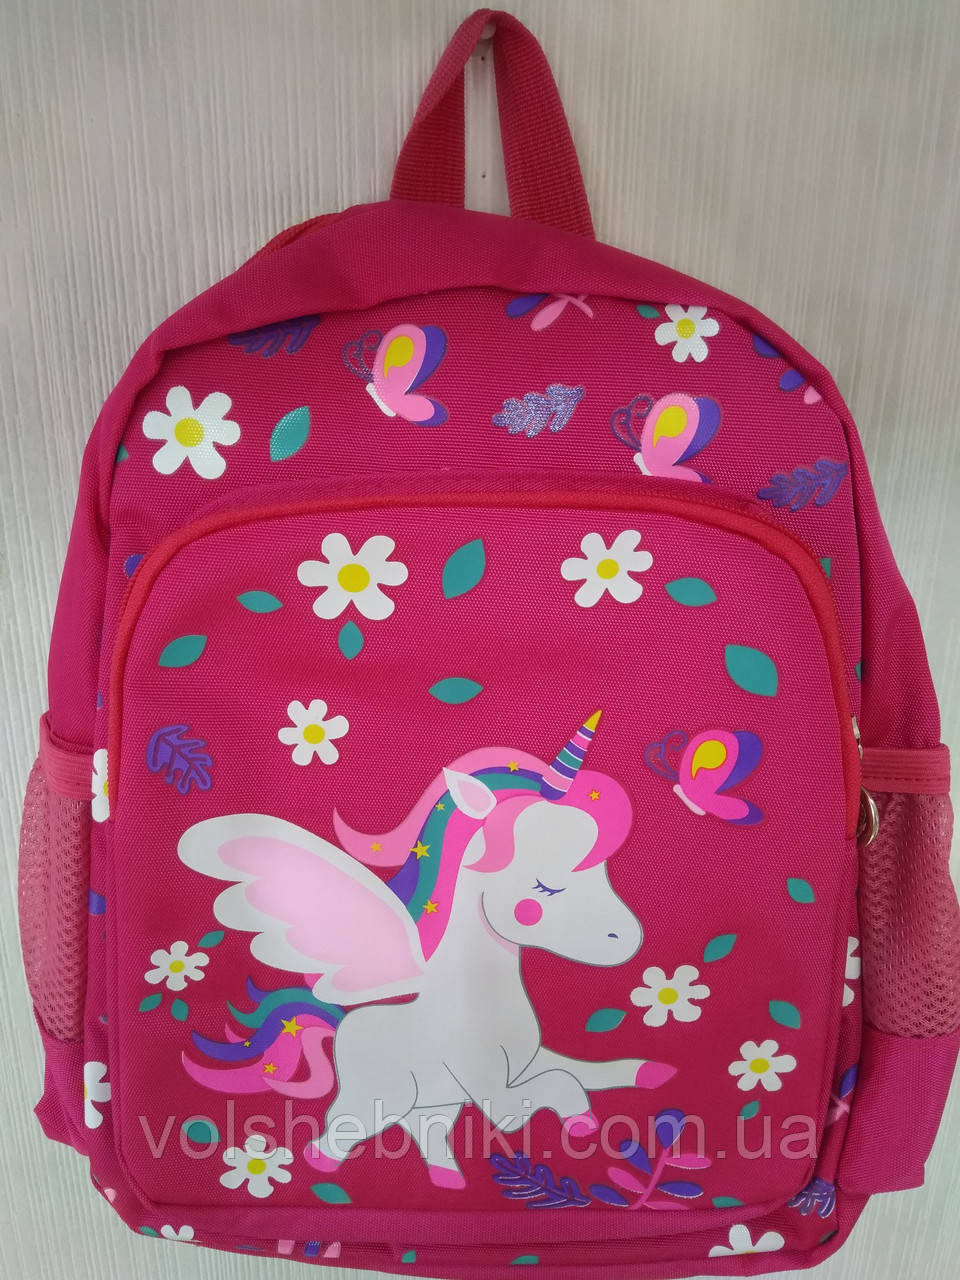 Дитячий рюкзак Едінорожек "Unicorn" ST02089